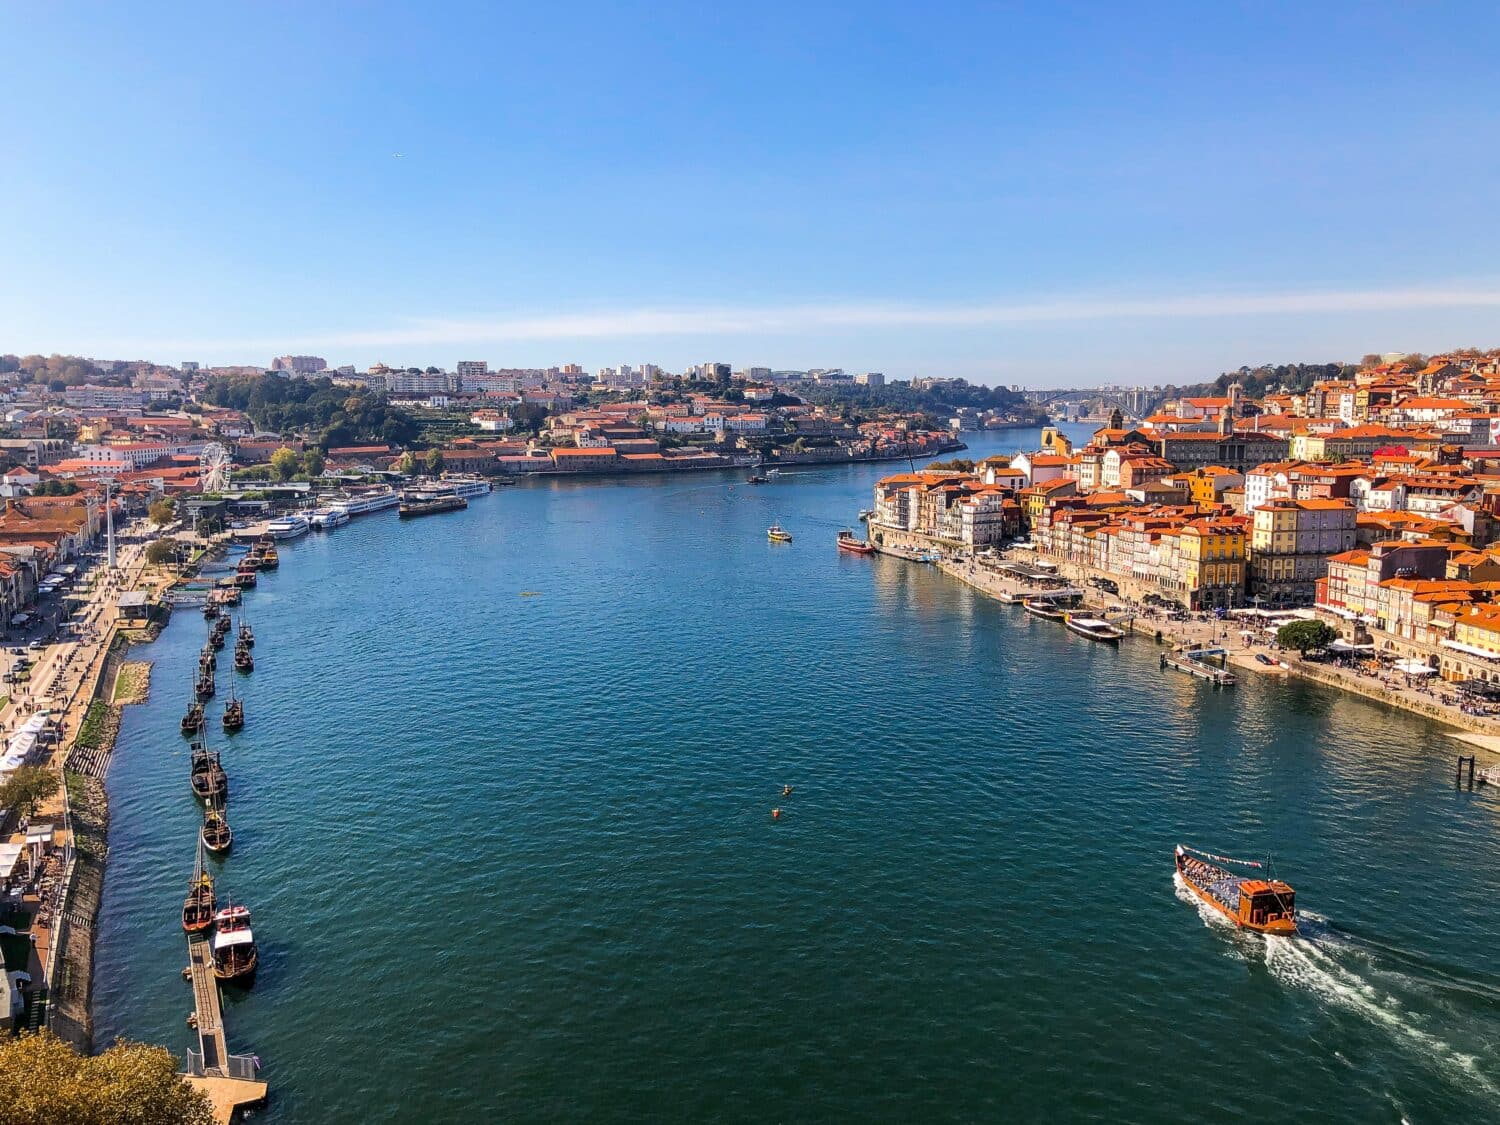 Imagem do cais de Porto em Portugal durante o dia com o rio no meio e em volta casas.